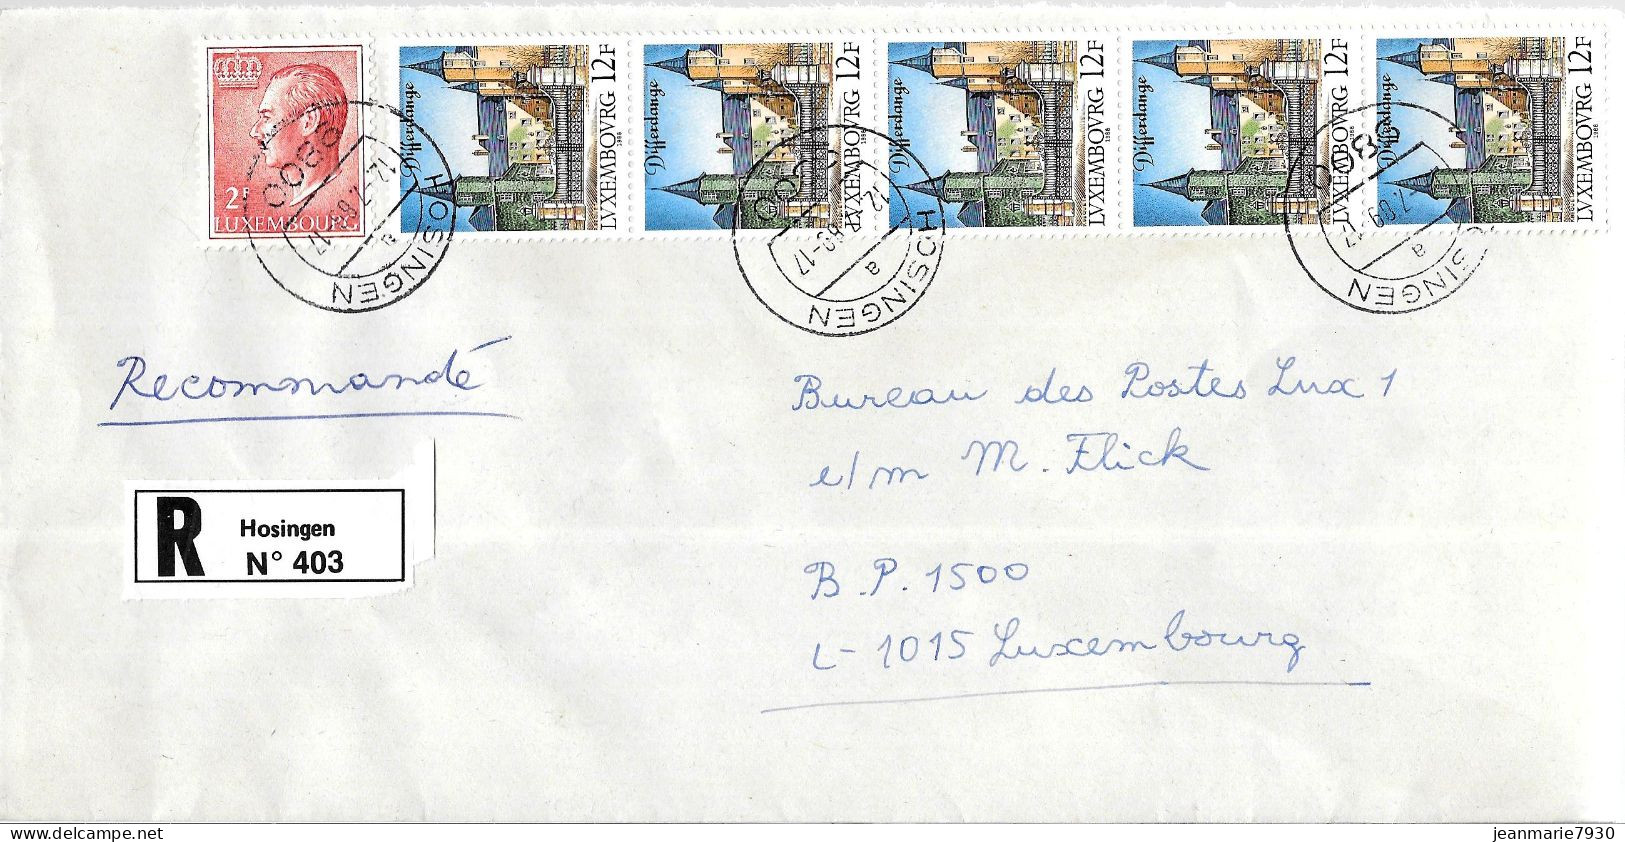 H382 - LETTRE RECOMMANDEE DE HOSINGEN DU 12/07/89 - Covers & Documents